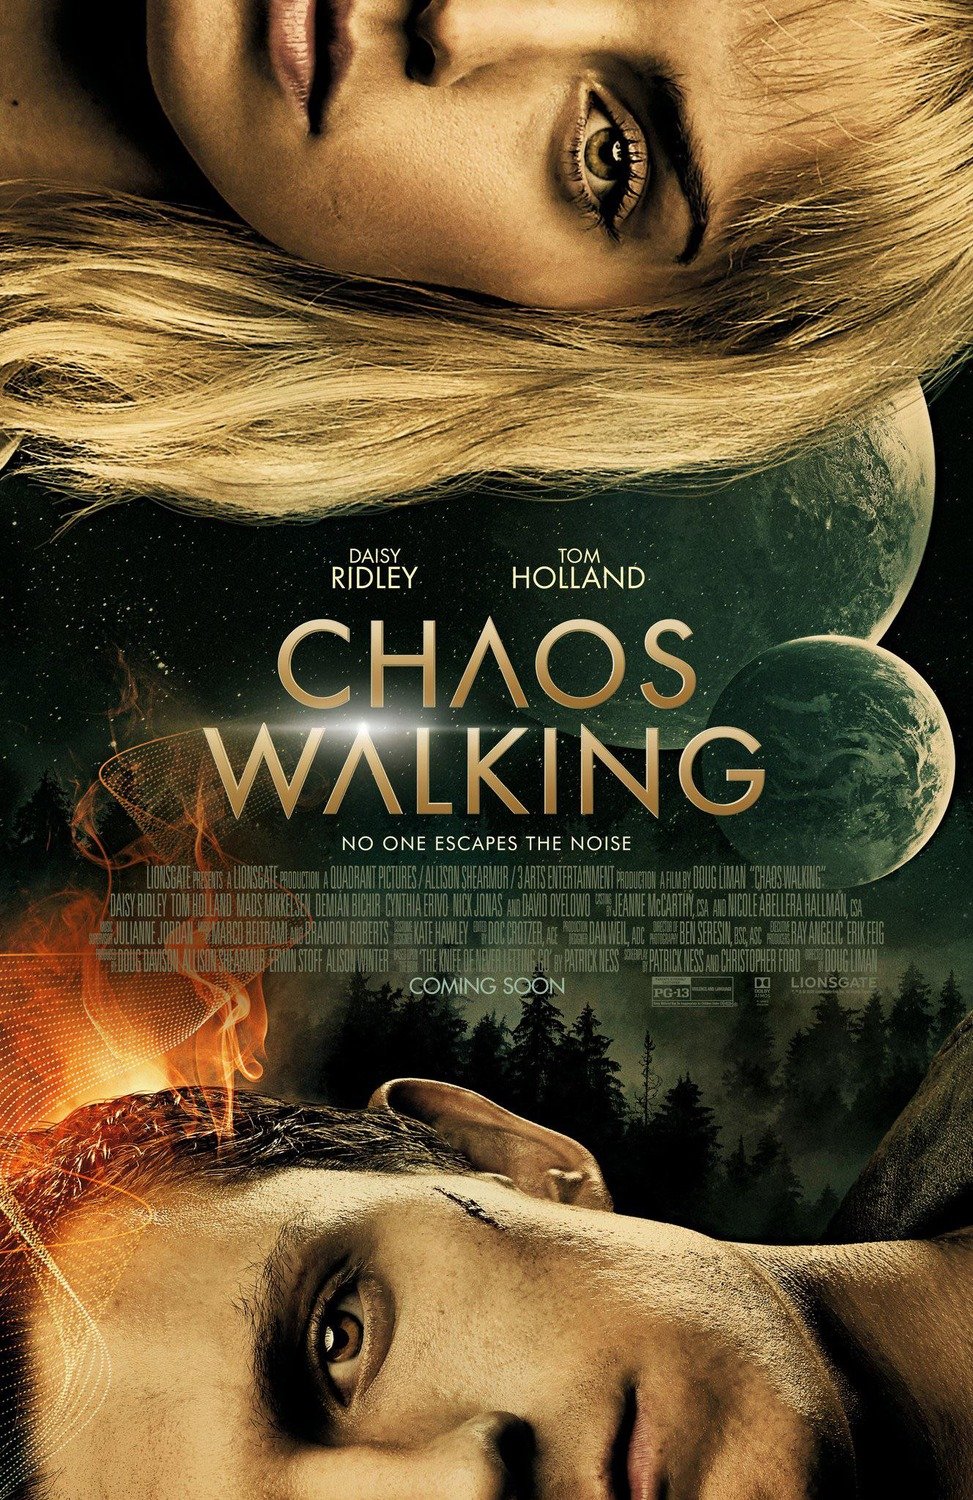 Chaos Walking (2021) - Score Mixer